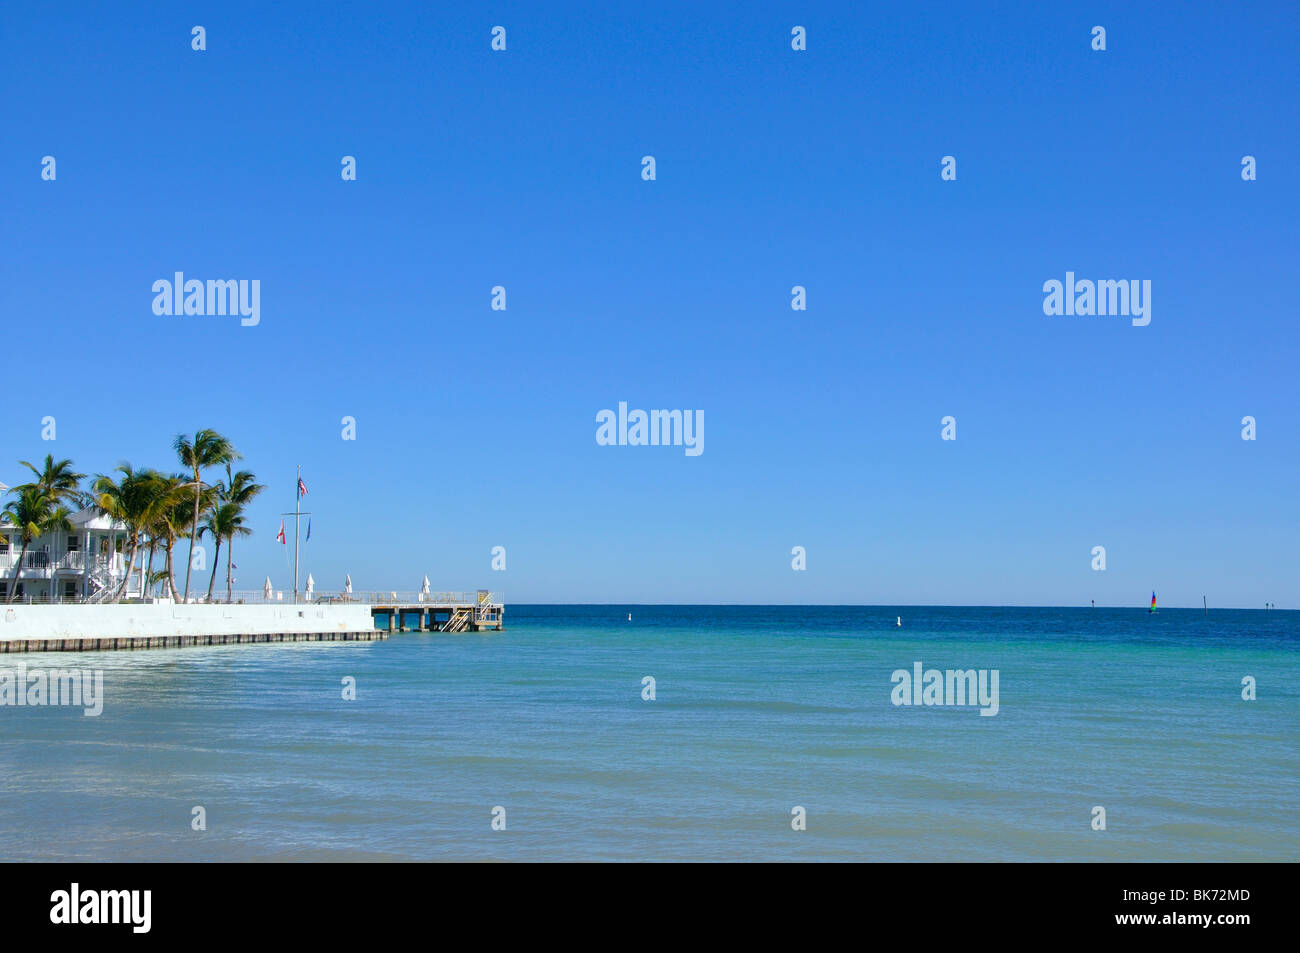 Hotel, Key West, Florida, USA Stock Photo